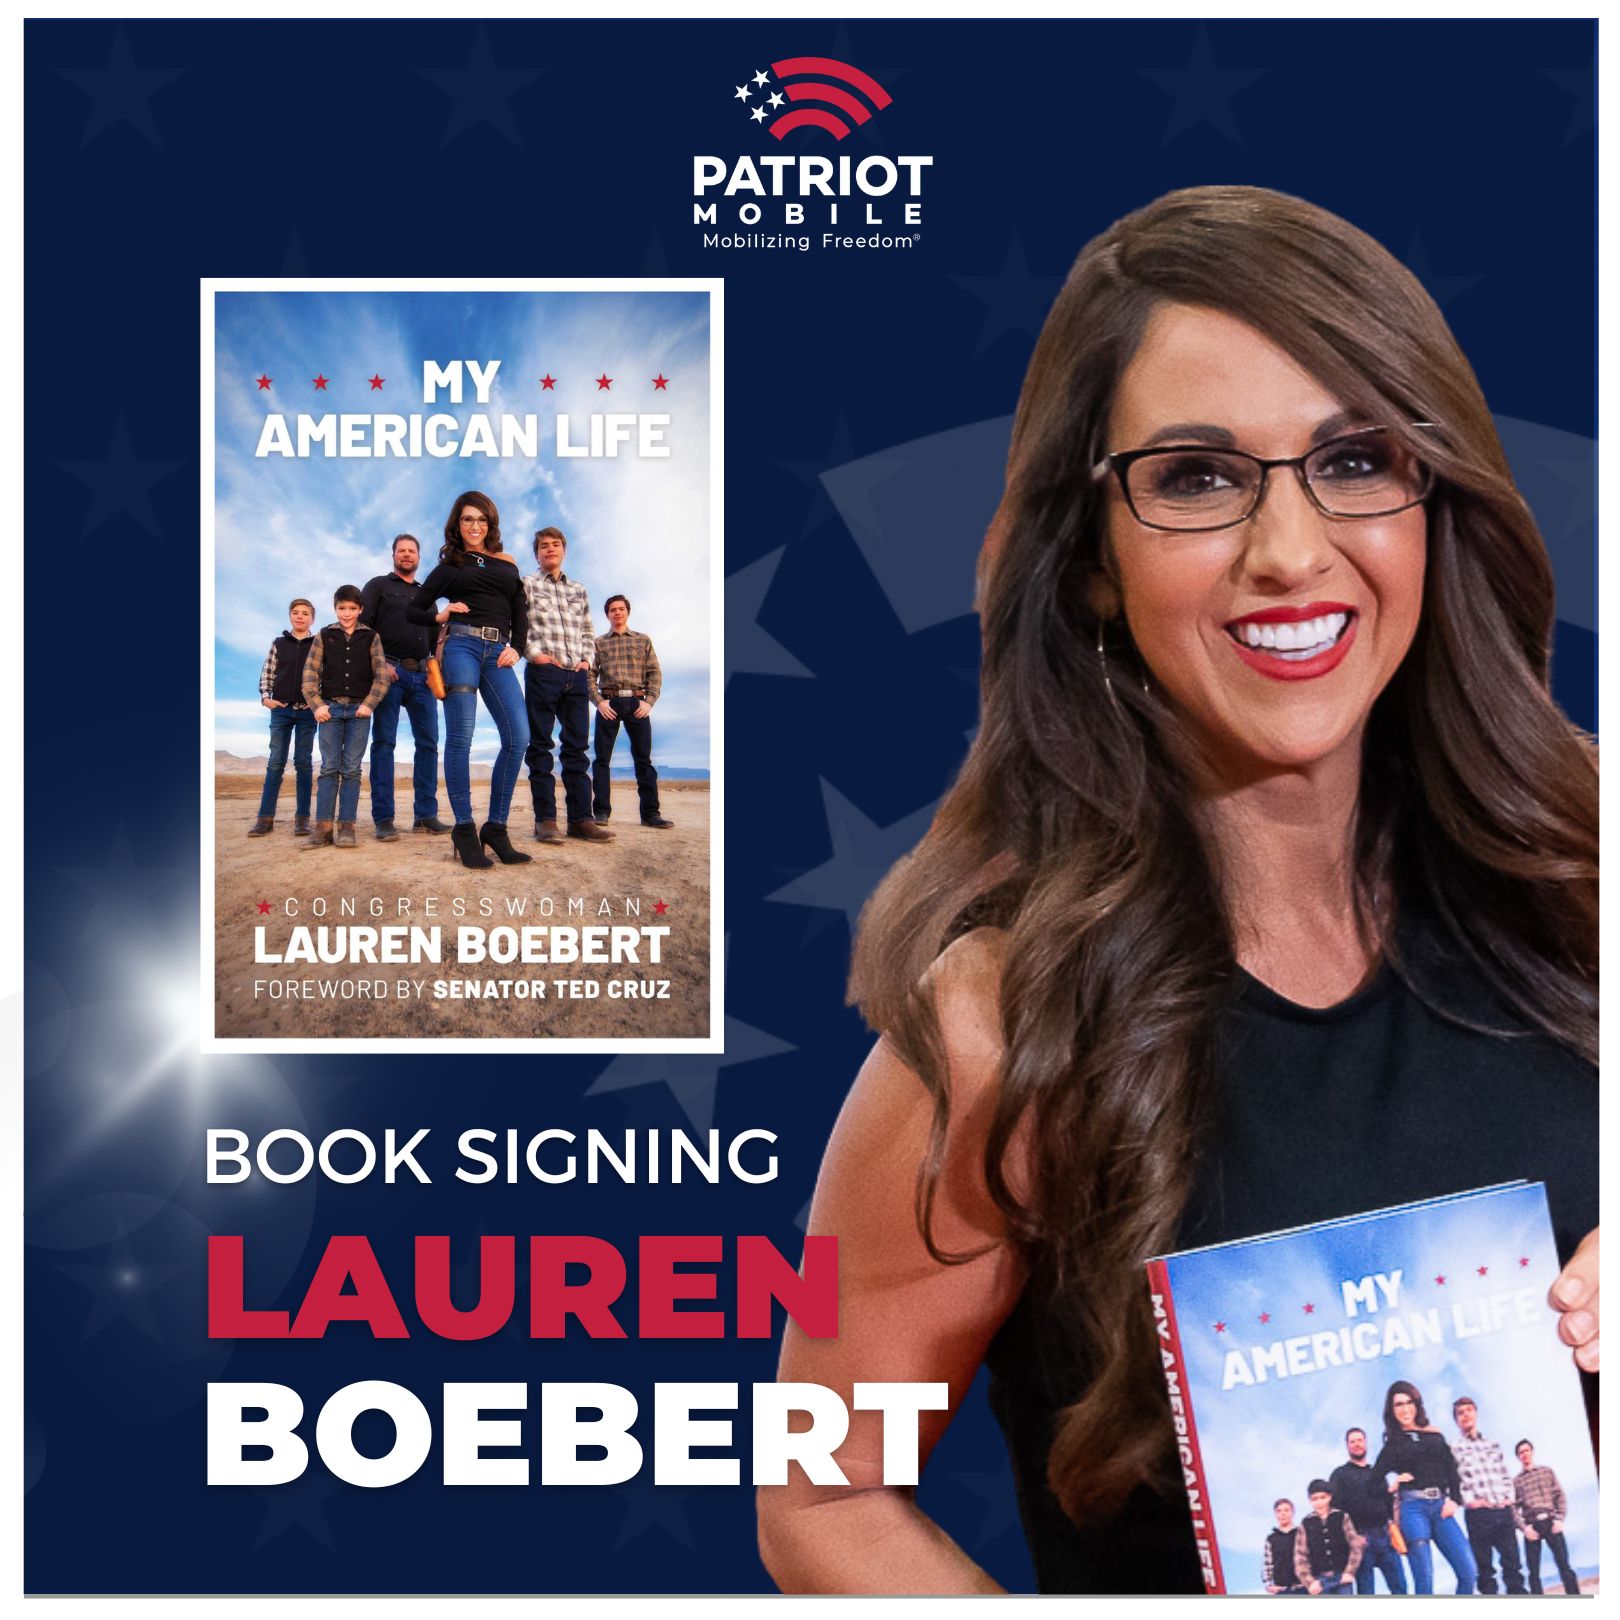 Lauren Boebert book signing with Patriot Mobile